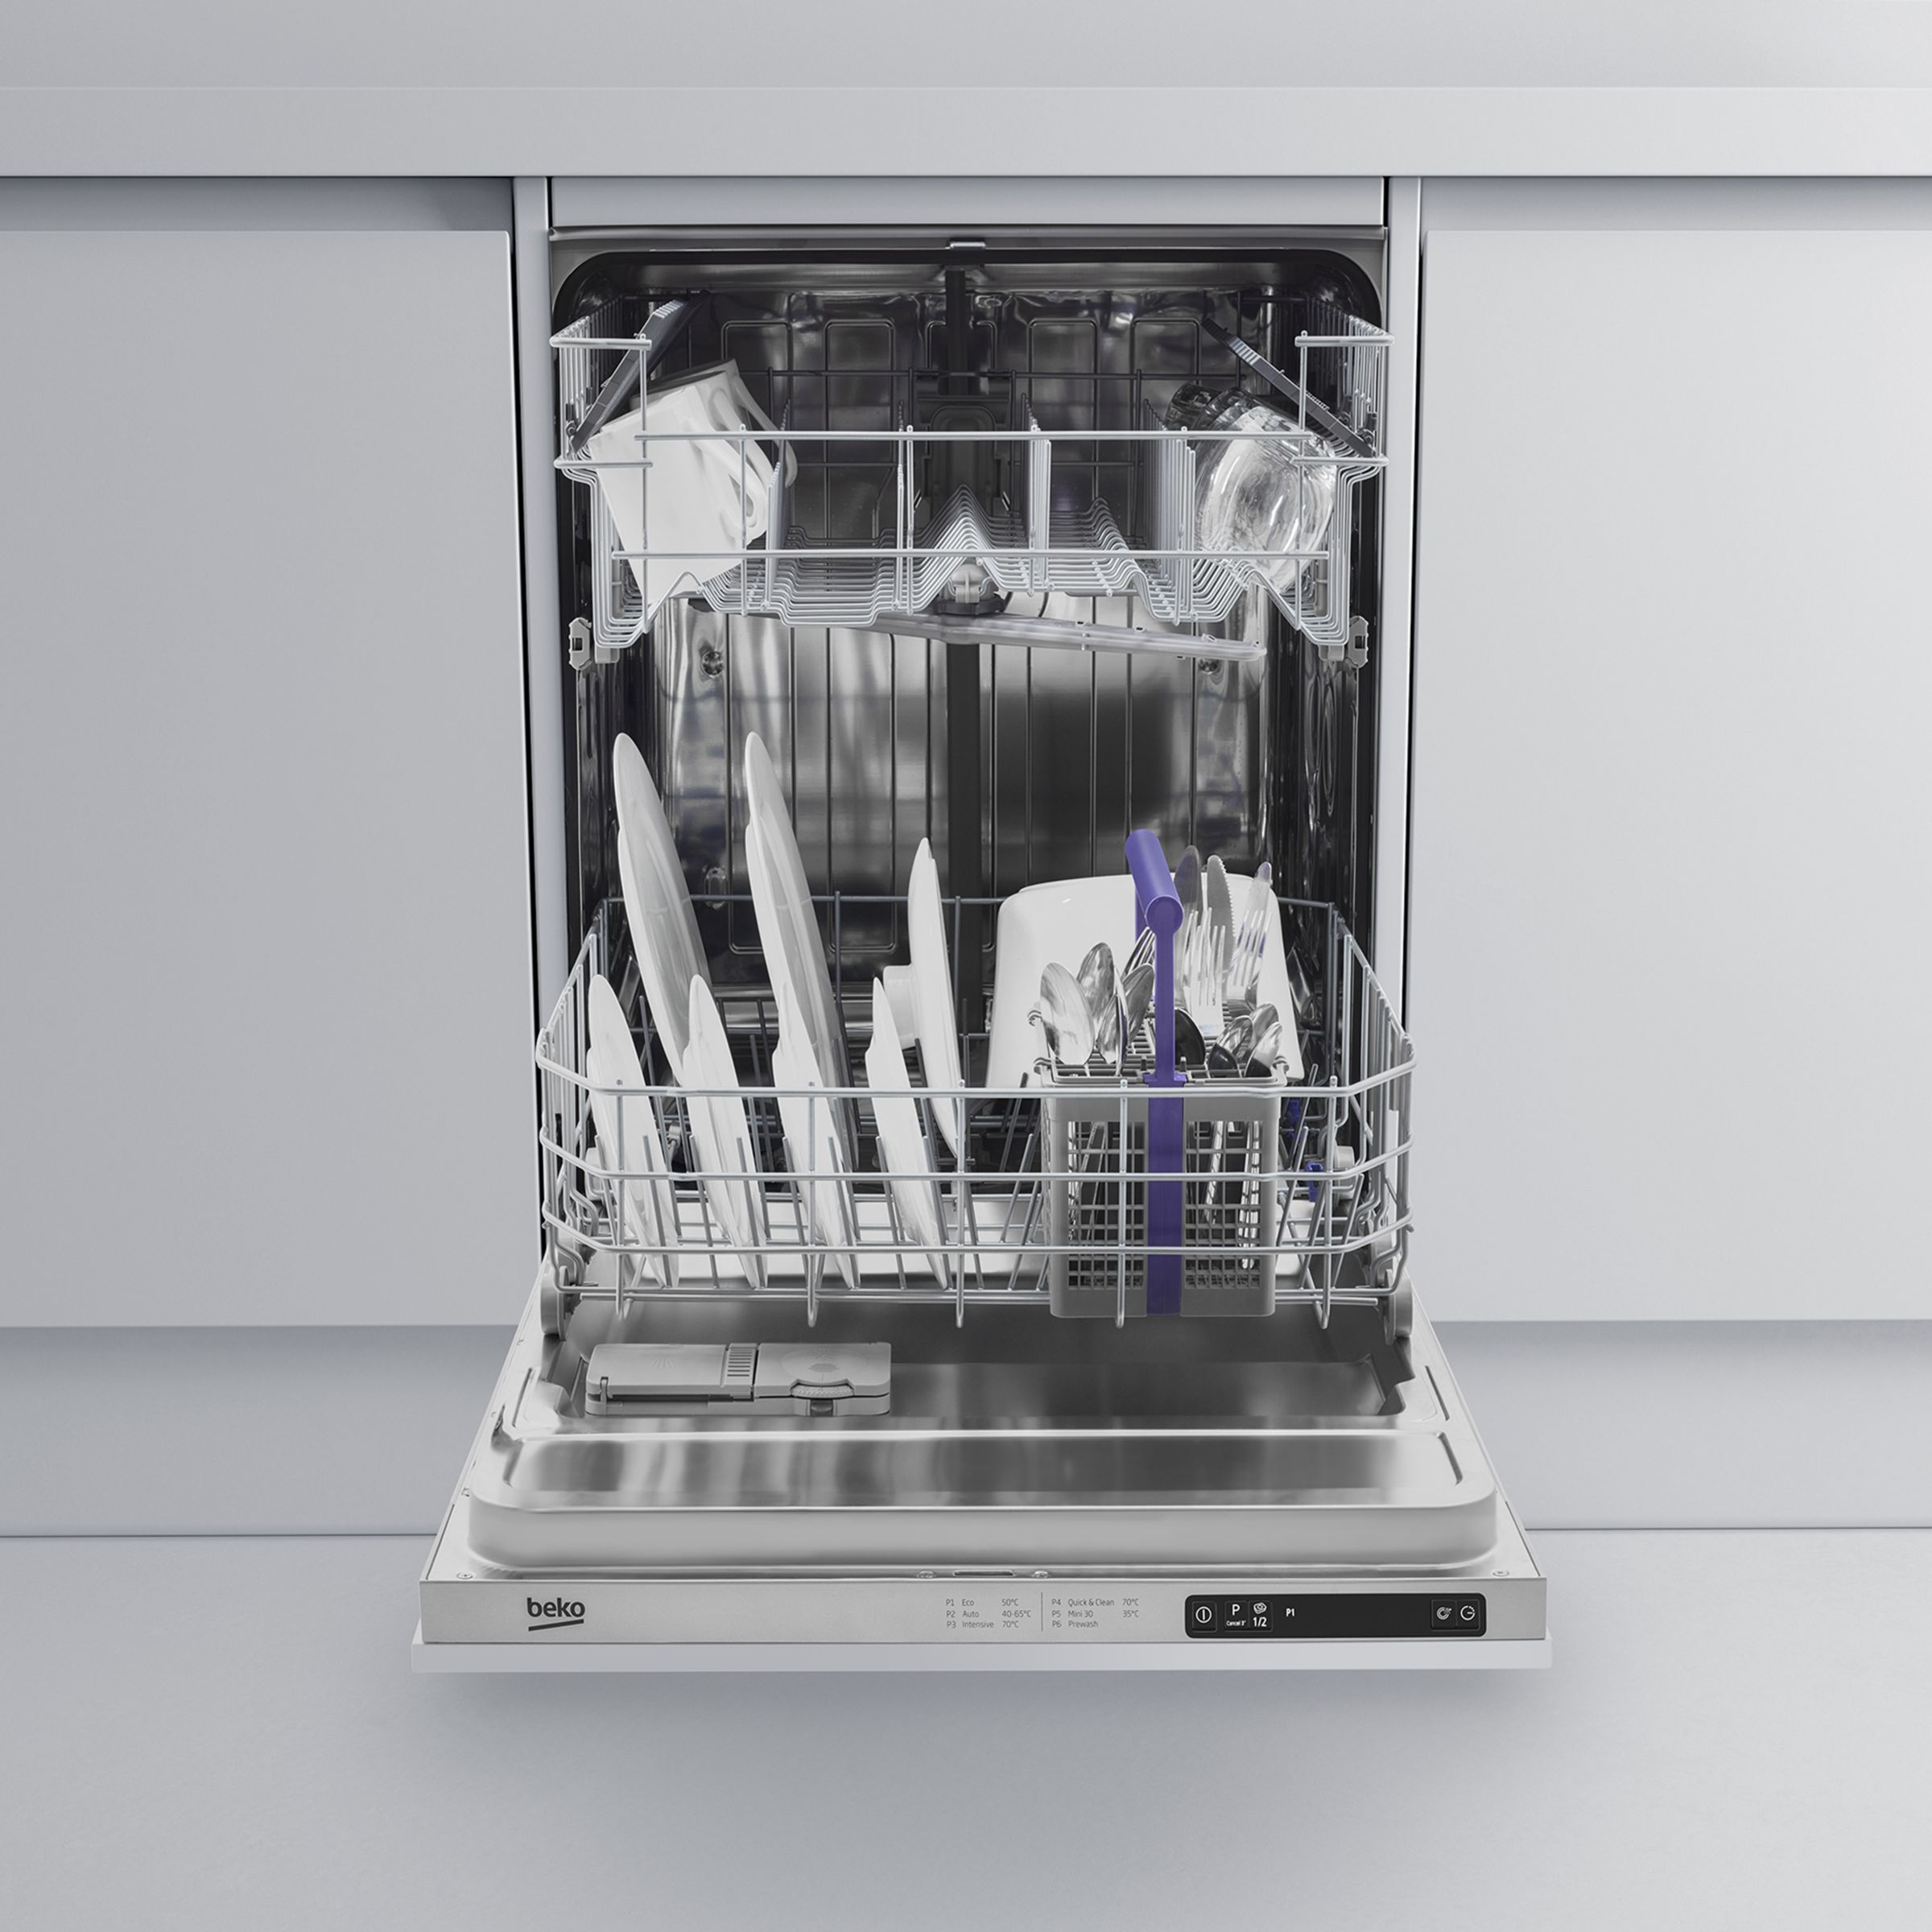 Beko DIN16210 Integrated Dishwasher at 